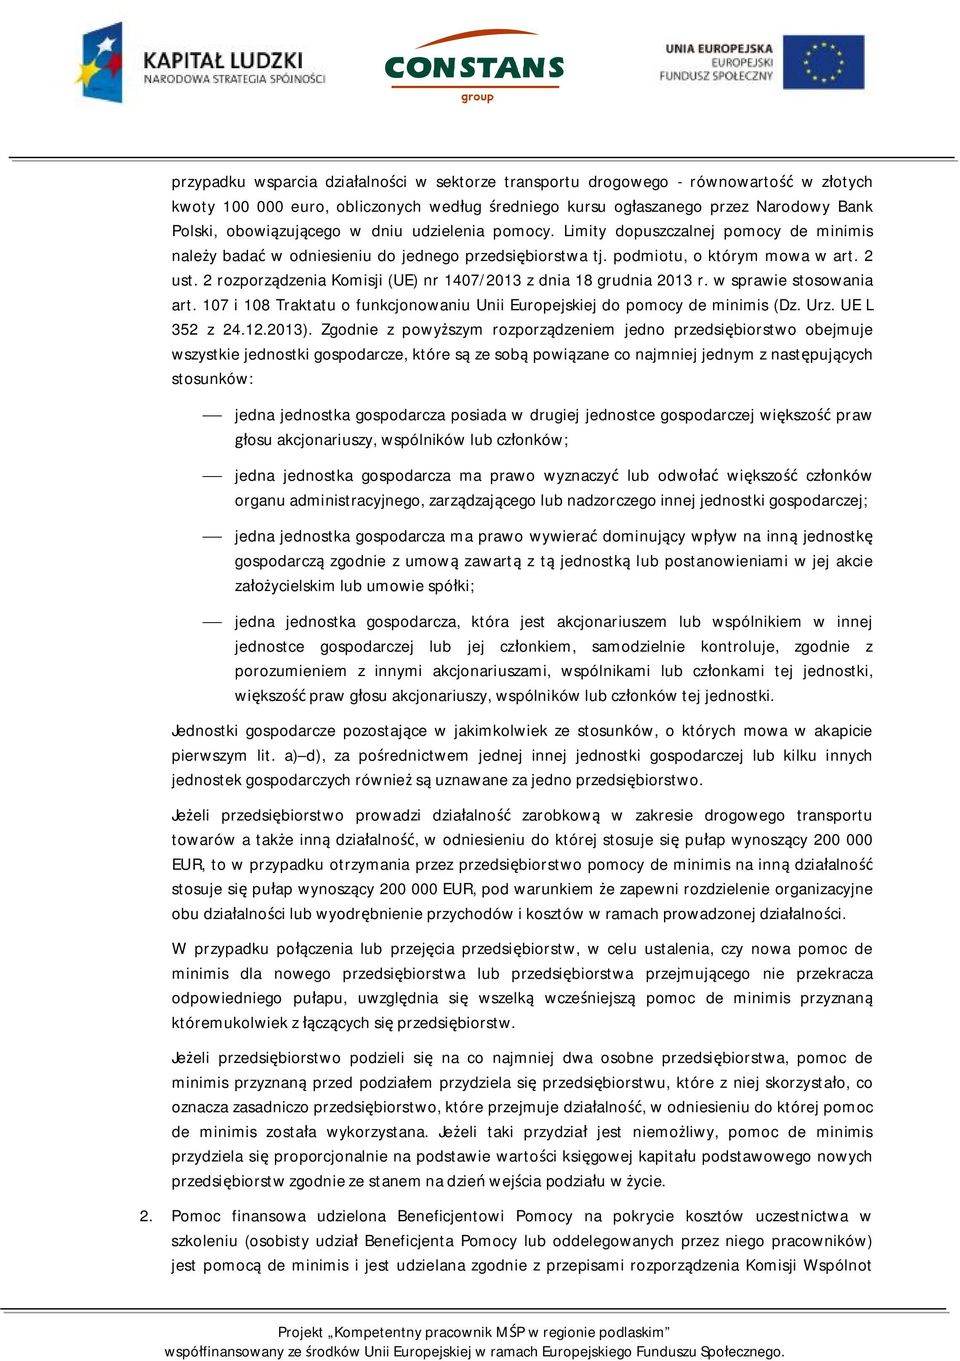 2 rozporządzenia Komisji (UE) nr 1407/2013 z dnia 18 grudnia 2013 r. w sprawie stosowania art. 107 i 108 Traktatu o funkcjonowaniu Unii Europejskiej do pomocy de minimis (Dz. Urz. UE L 352 z 24.12.